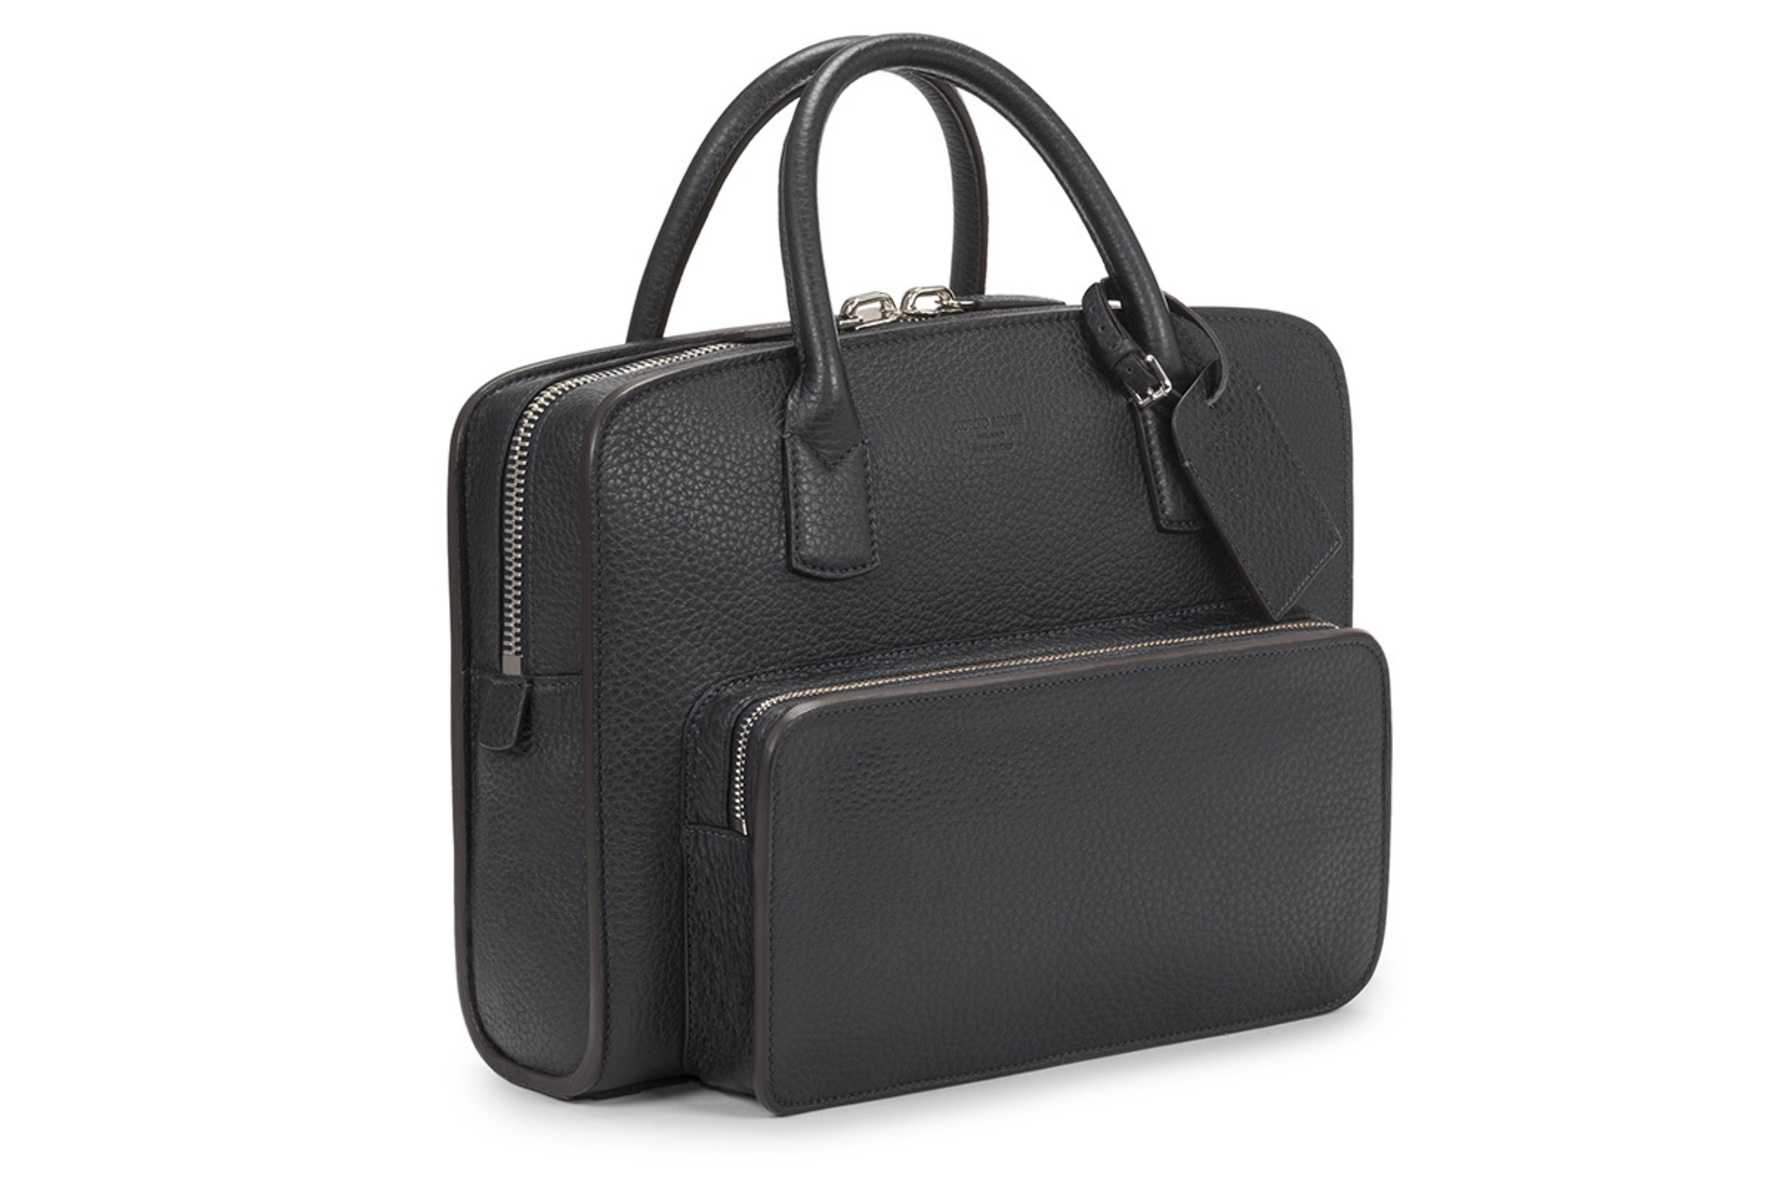 次世代のビジネスマンにふさわしい ジョルジオ アルマーニの新作バッグ 